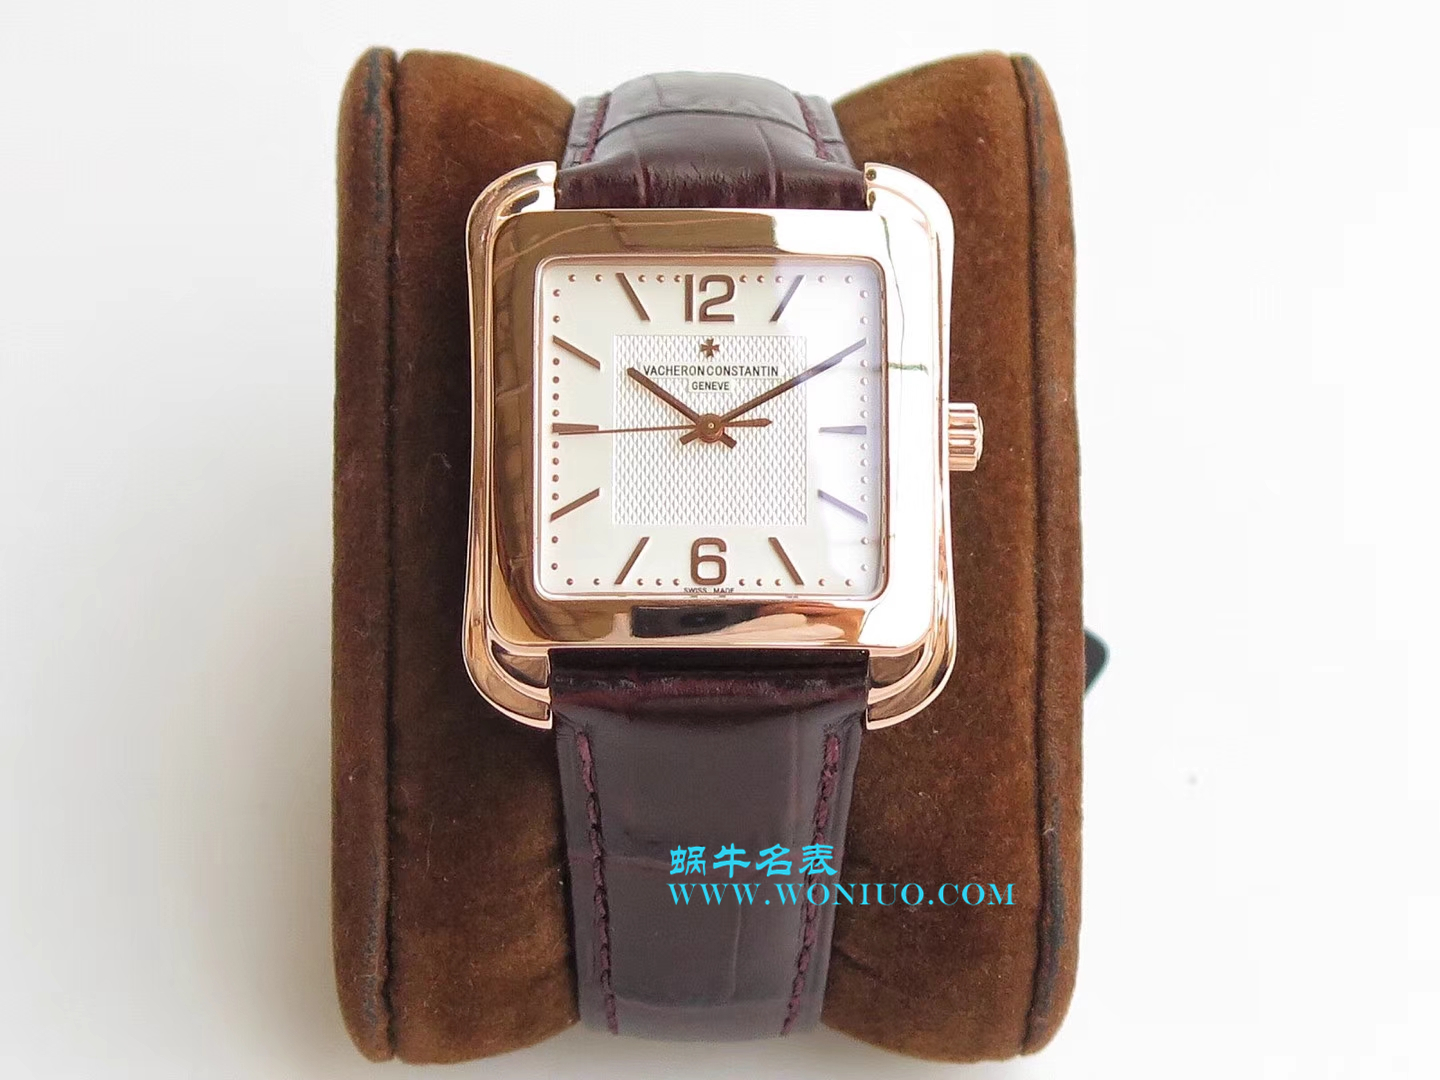 【GS一比一超A高仿手表】江诗丹顿历史名作系列86300/000R-9826腕表 / JS187